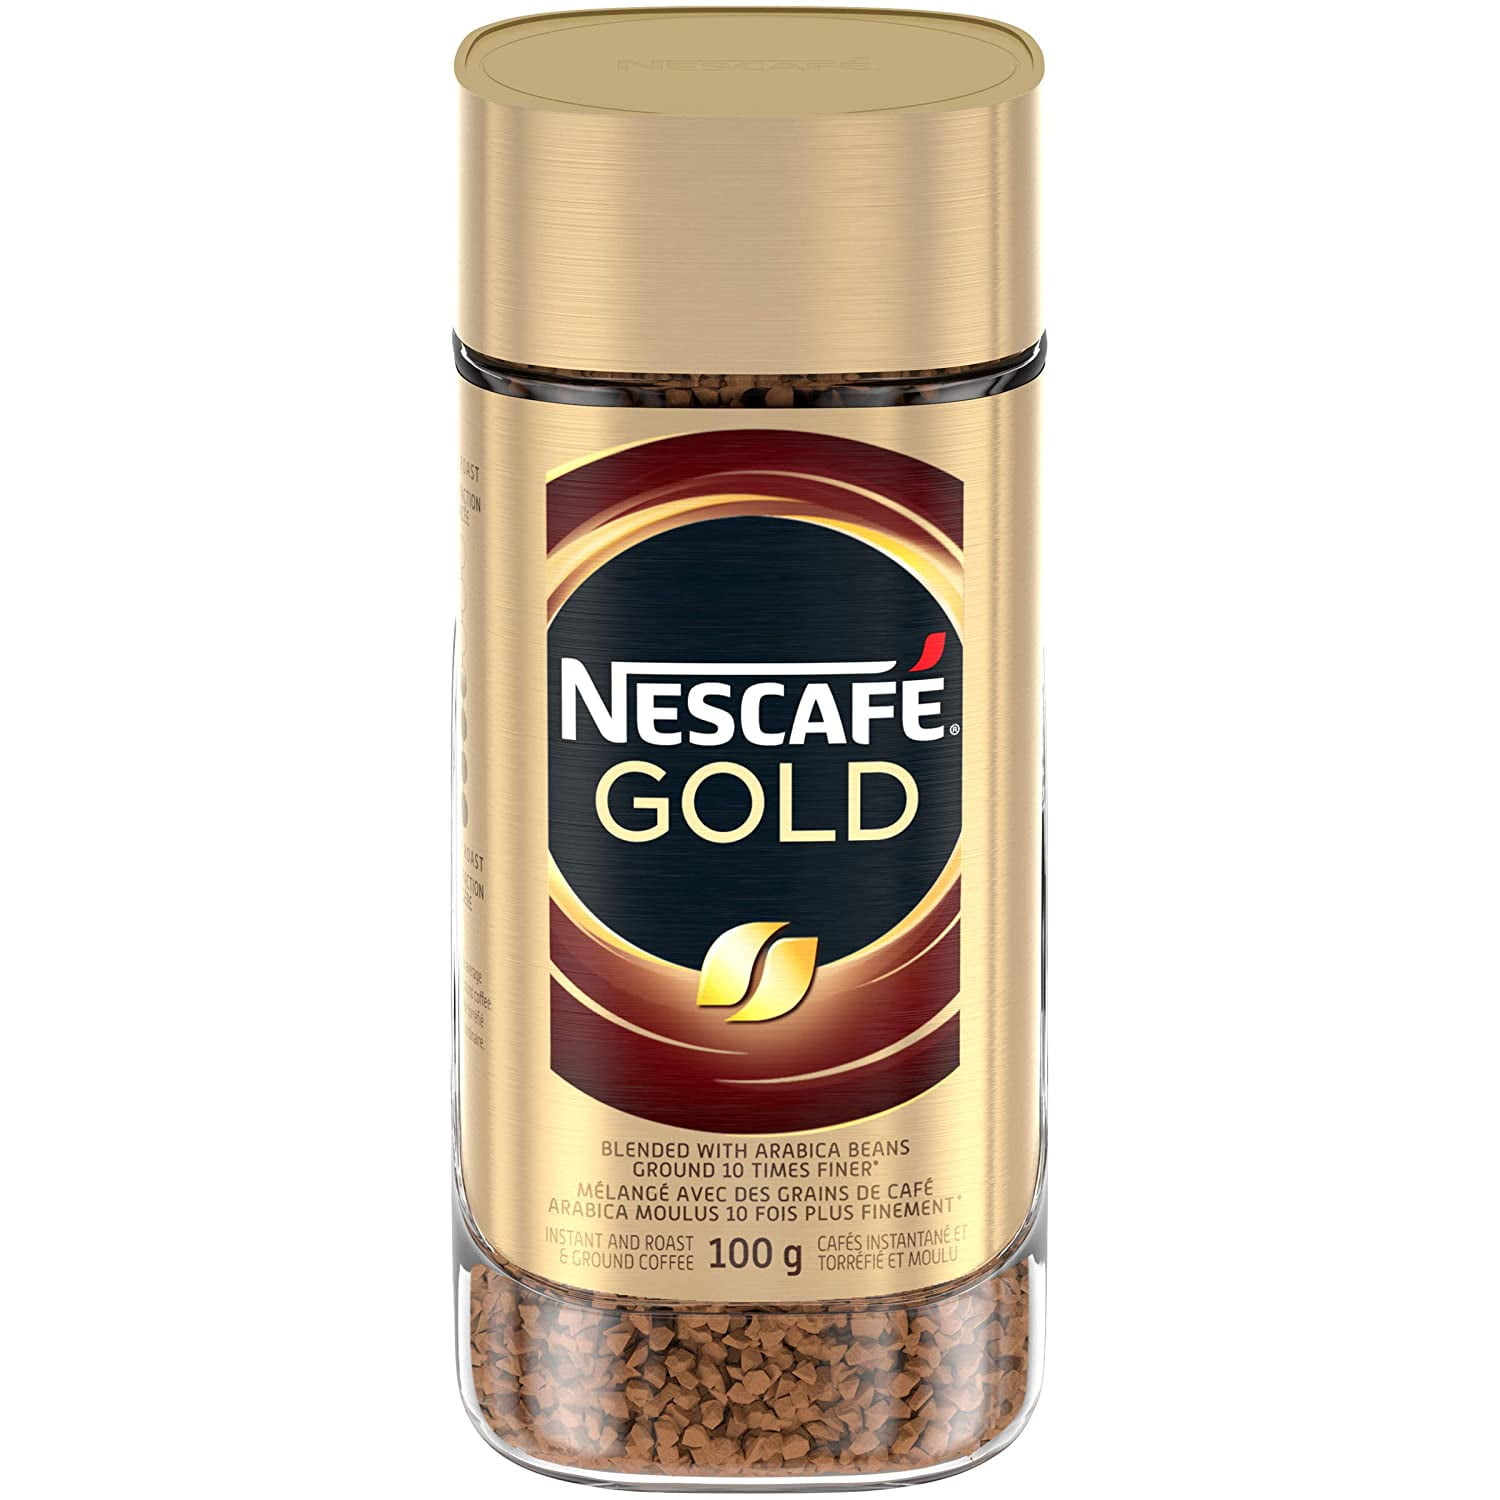 NESCAF Gold Medium Roast Instant Coffee, 100g Jar